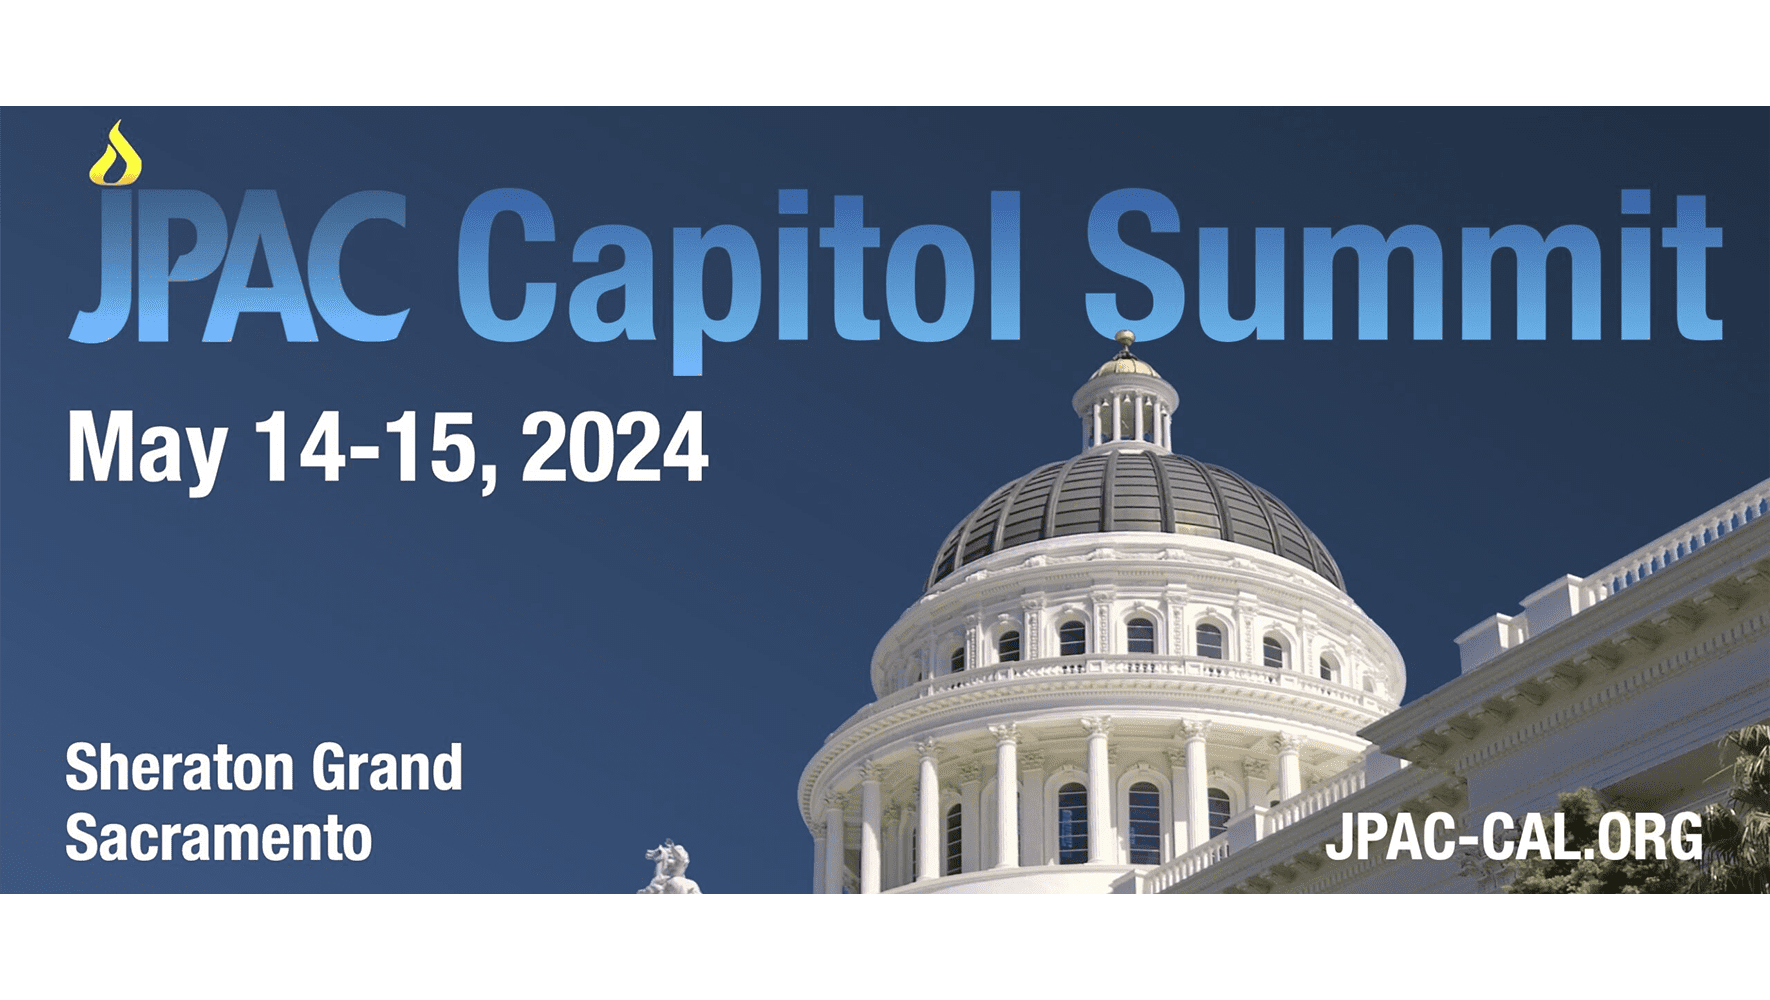 JPAC Capitol Summit 